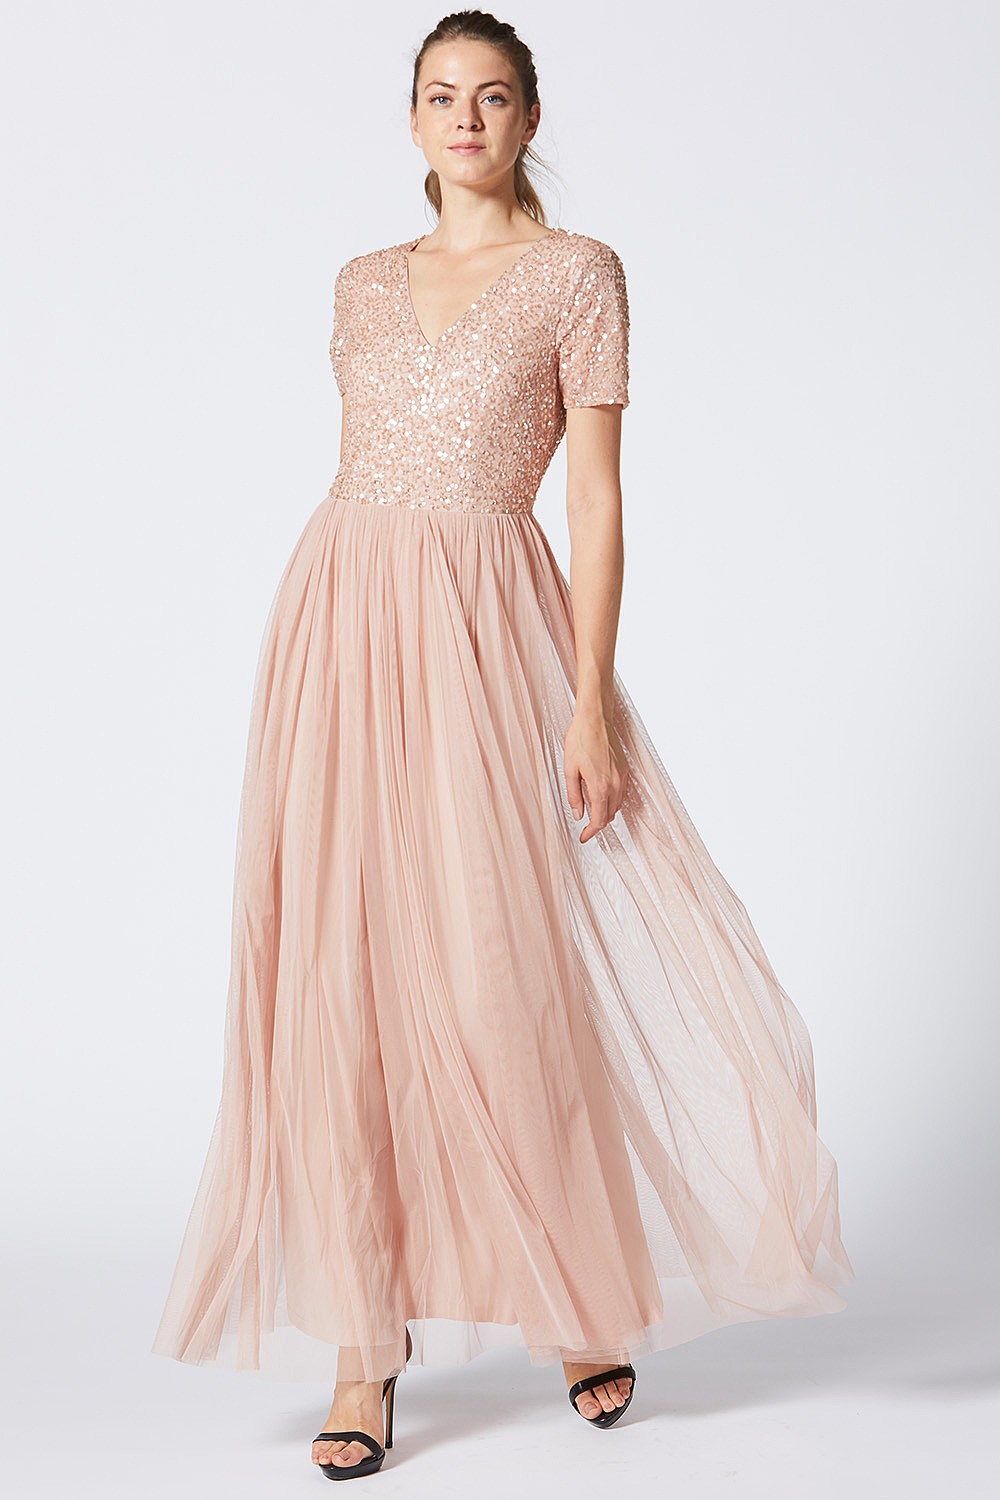 embellished pink maxi dress